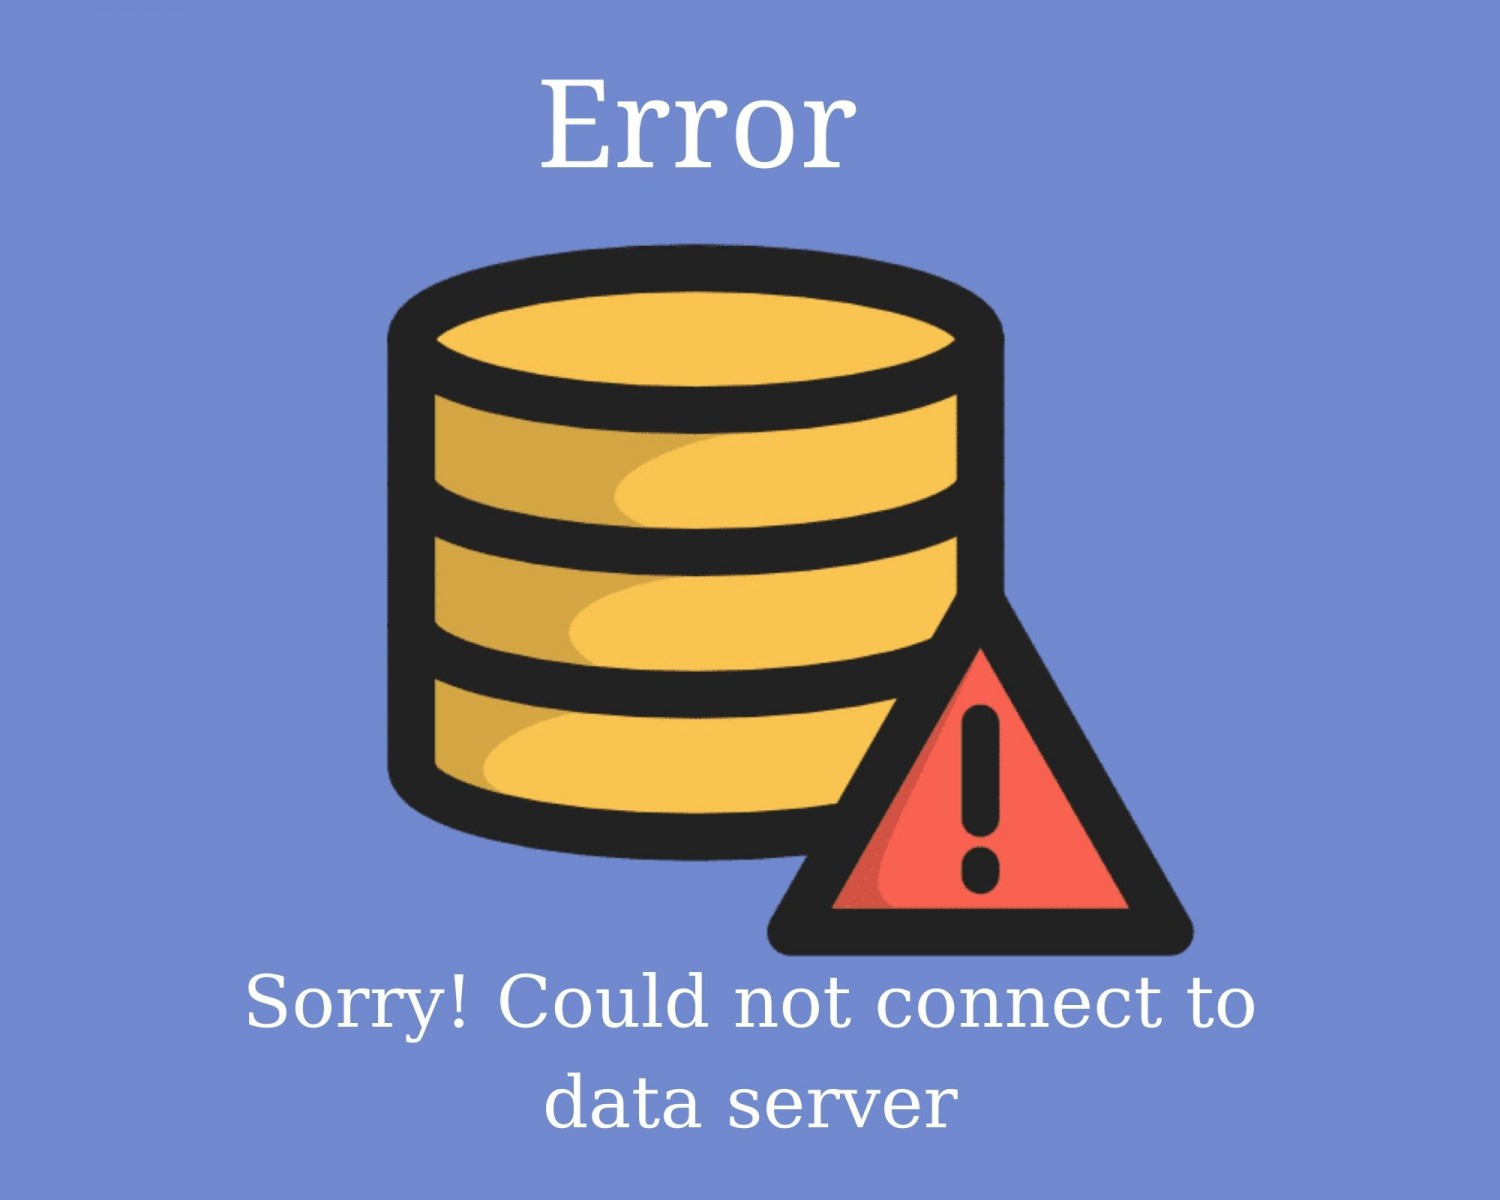 Khắc phục lỗi không kết nối được cơ sở dữ liệu trong NukeViet